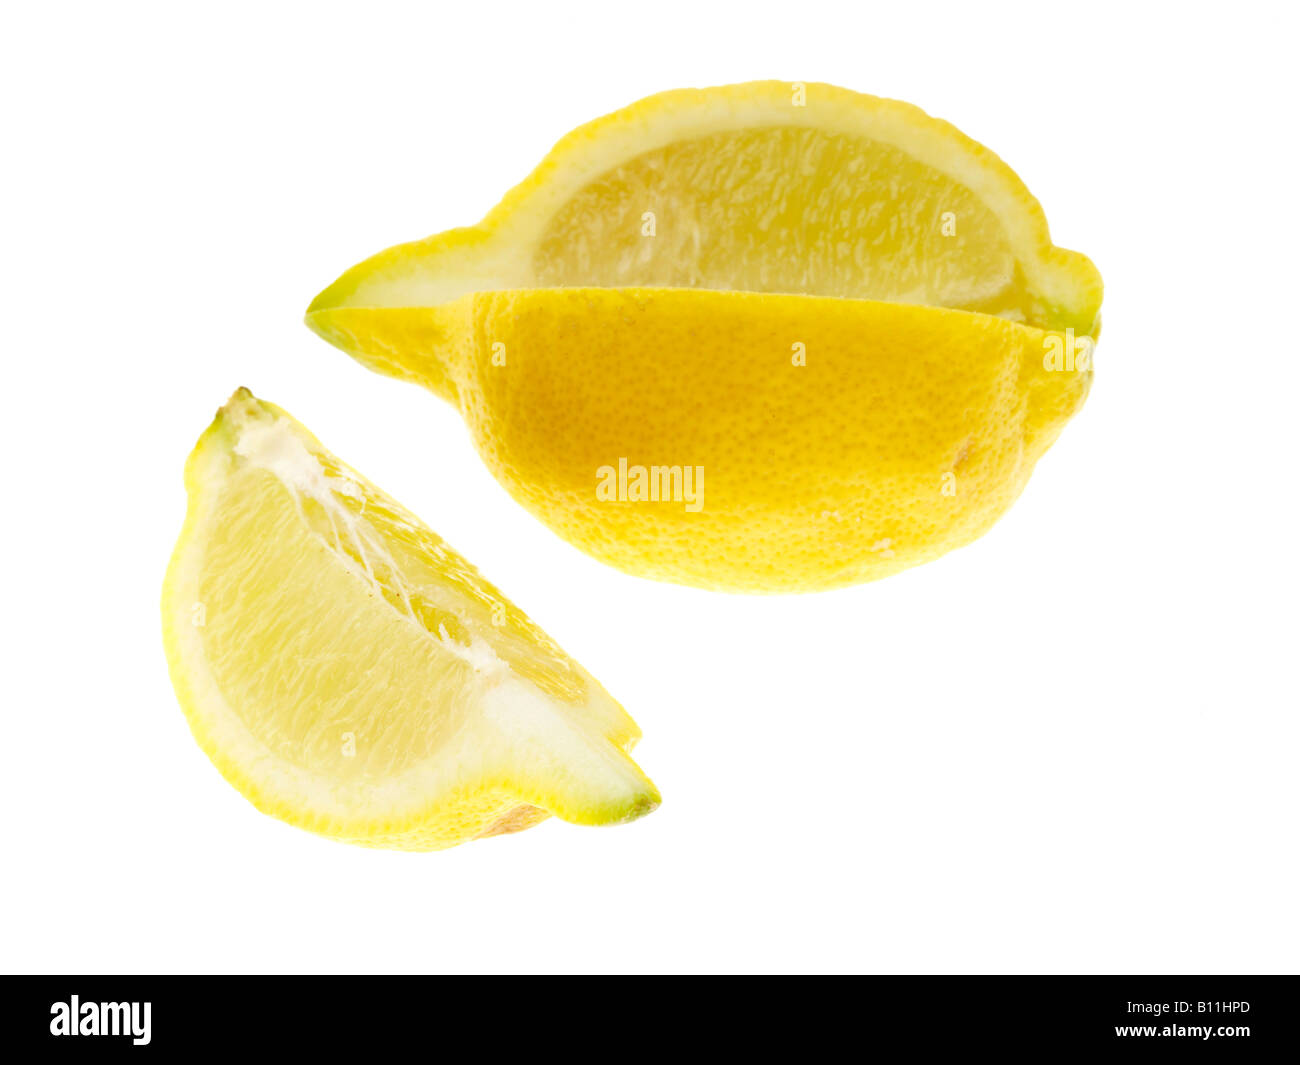 Fresco saludable fruta madura limón amarillo aisladas contra un fondo blanco con ningún pueblo y un trazado de recorte Foto de stock